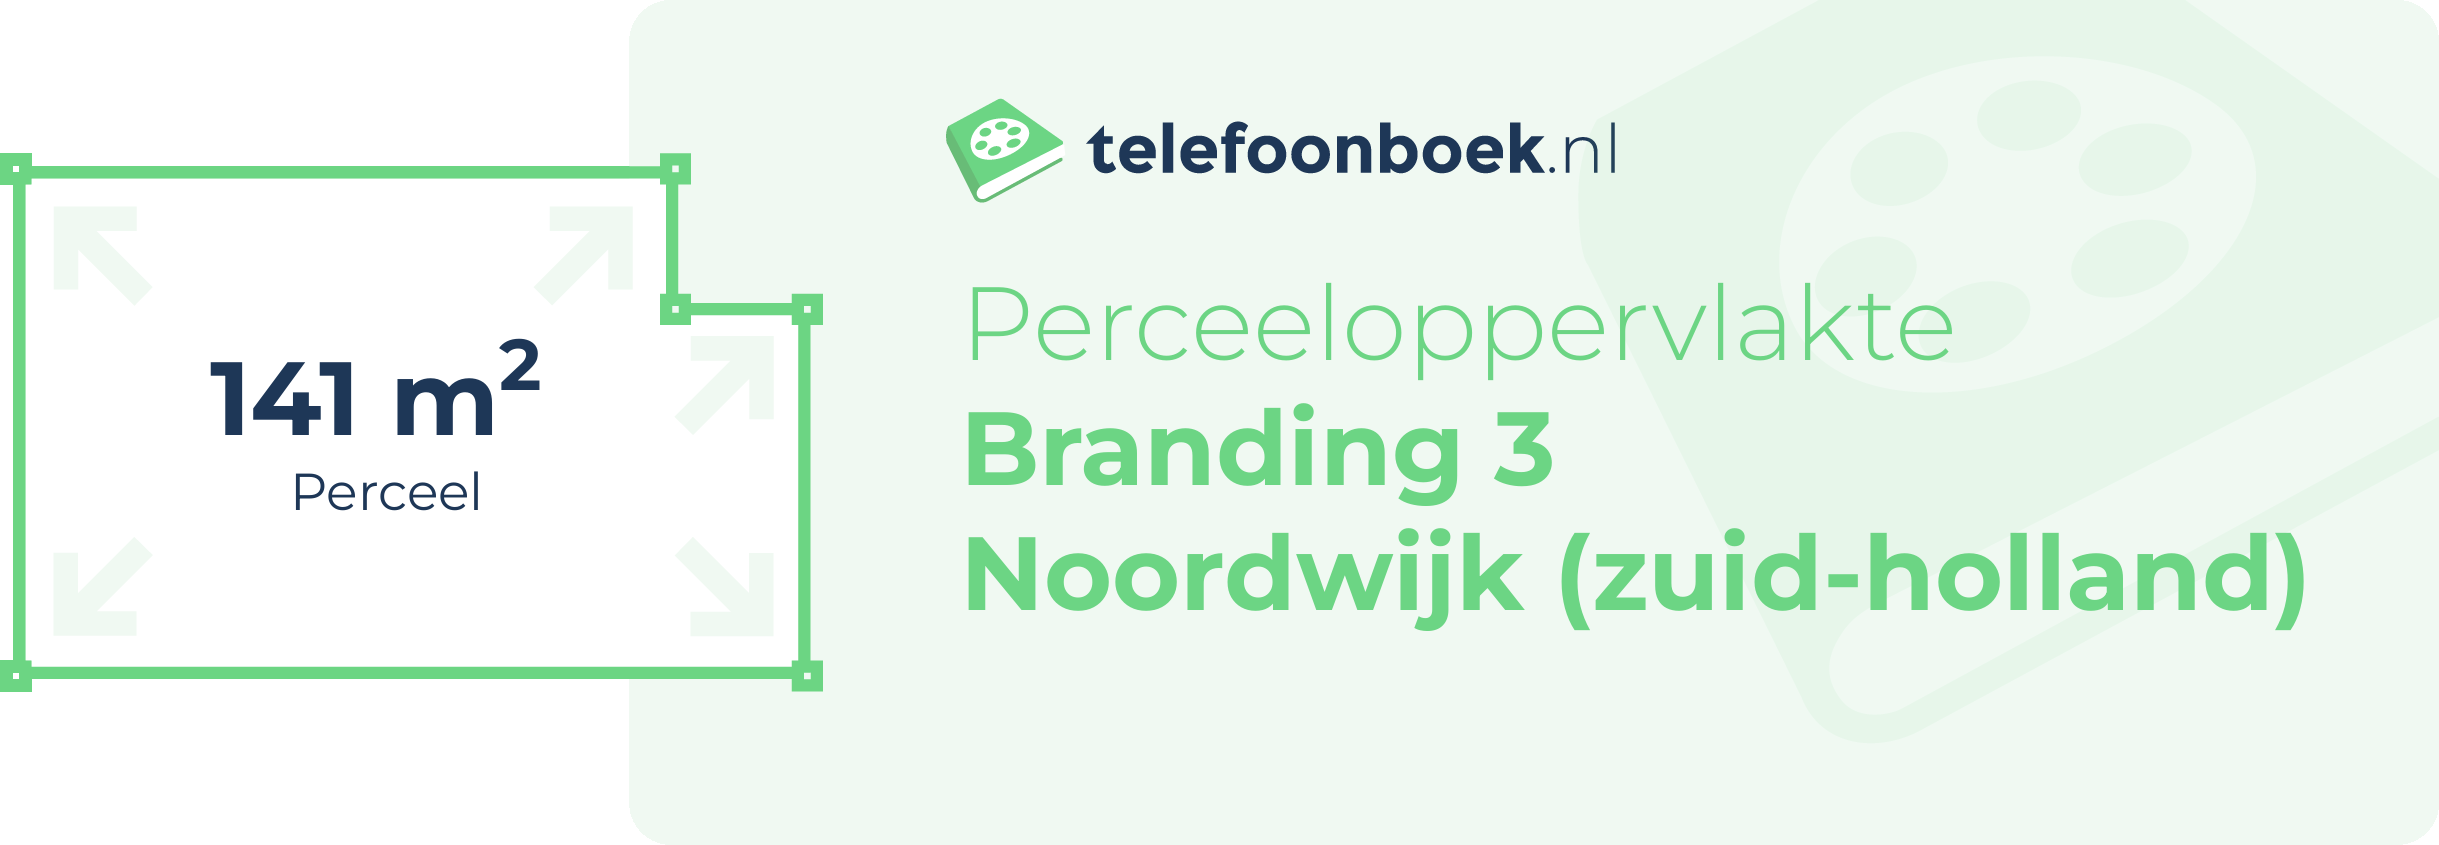 Perceeloppervlakte Branding 3 Noordwijk (Zuid-Holland)